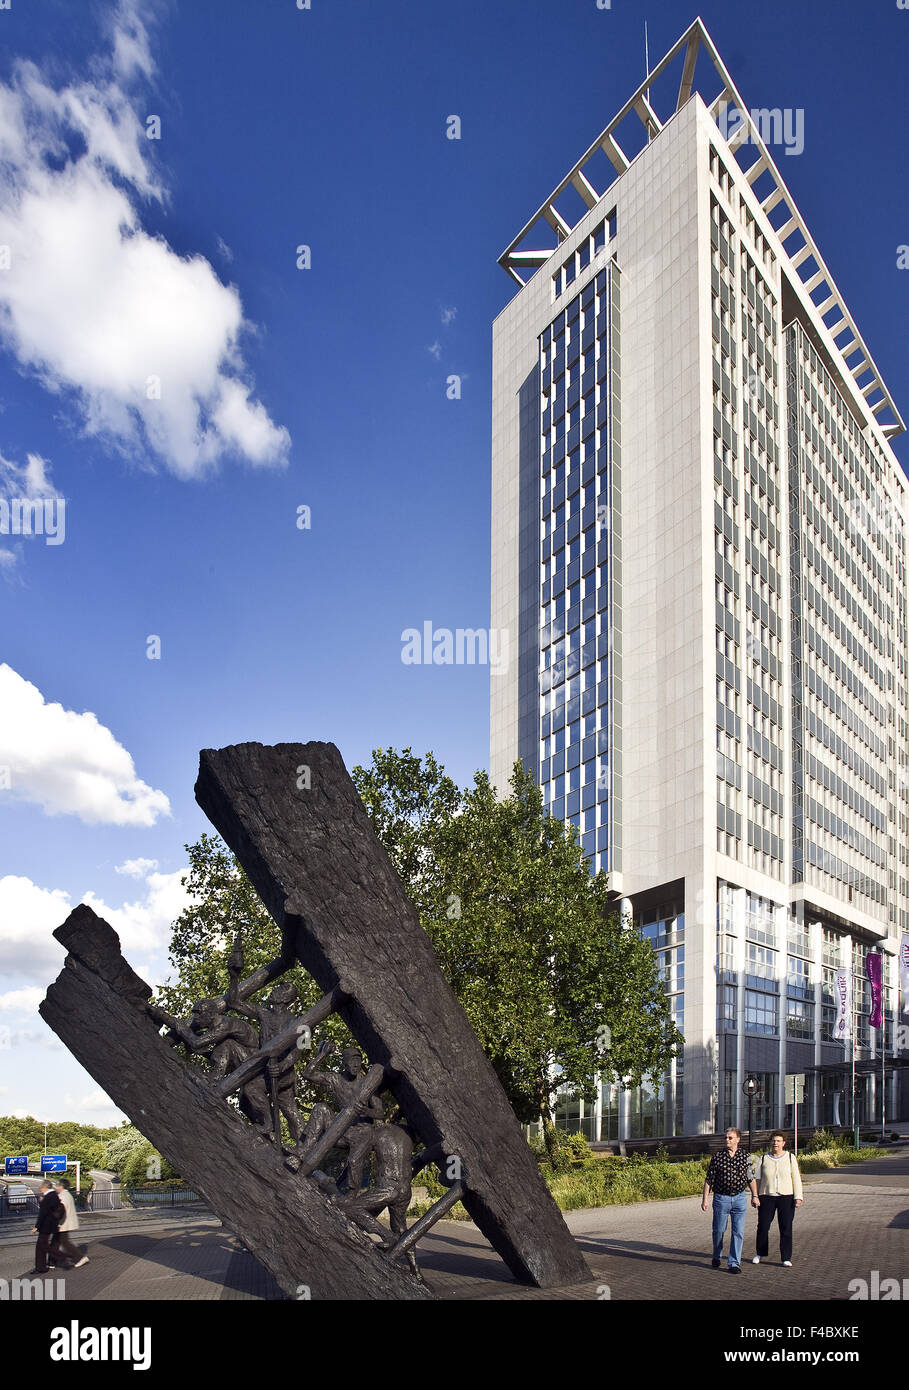 Stockage raide de l'oeuvre, Essen, Allemagne Banque D'Images